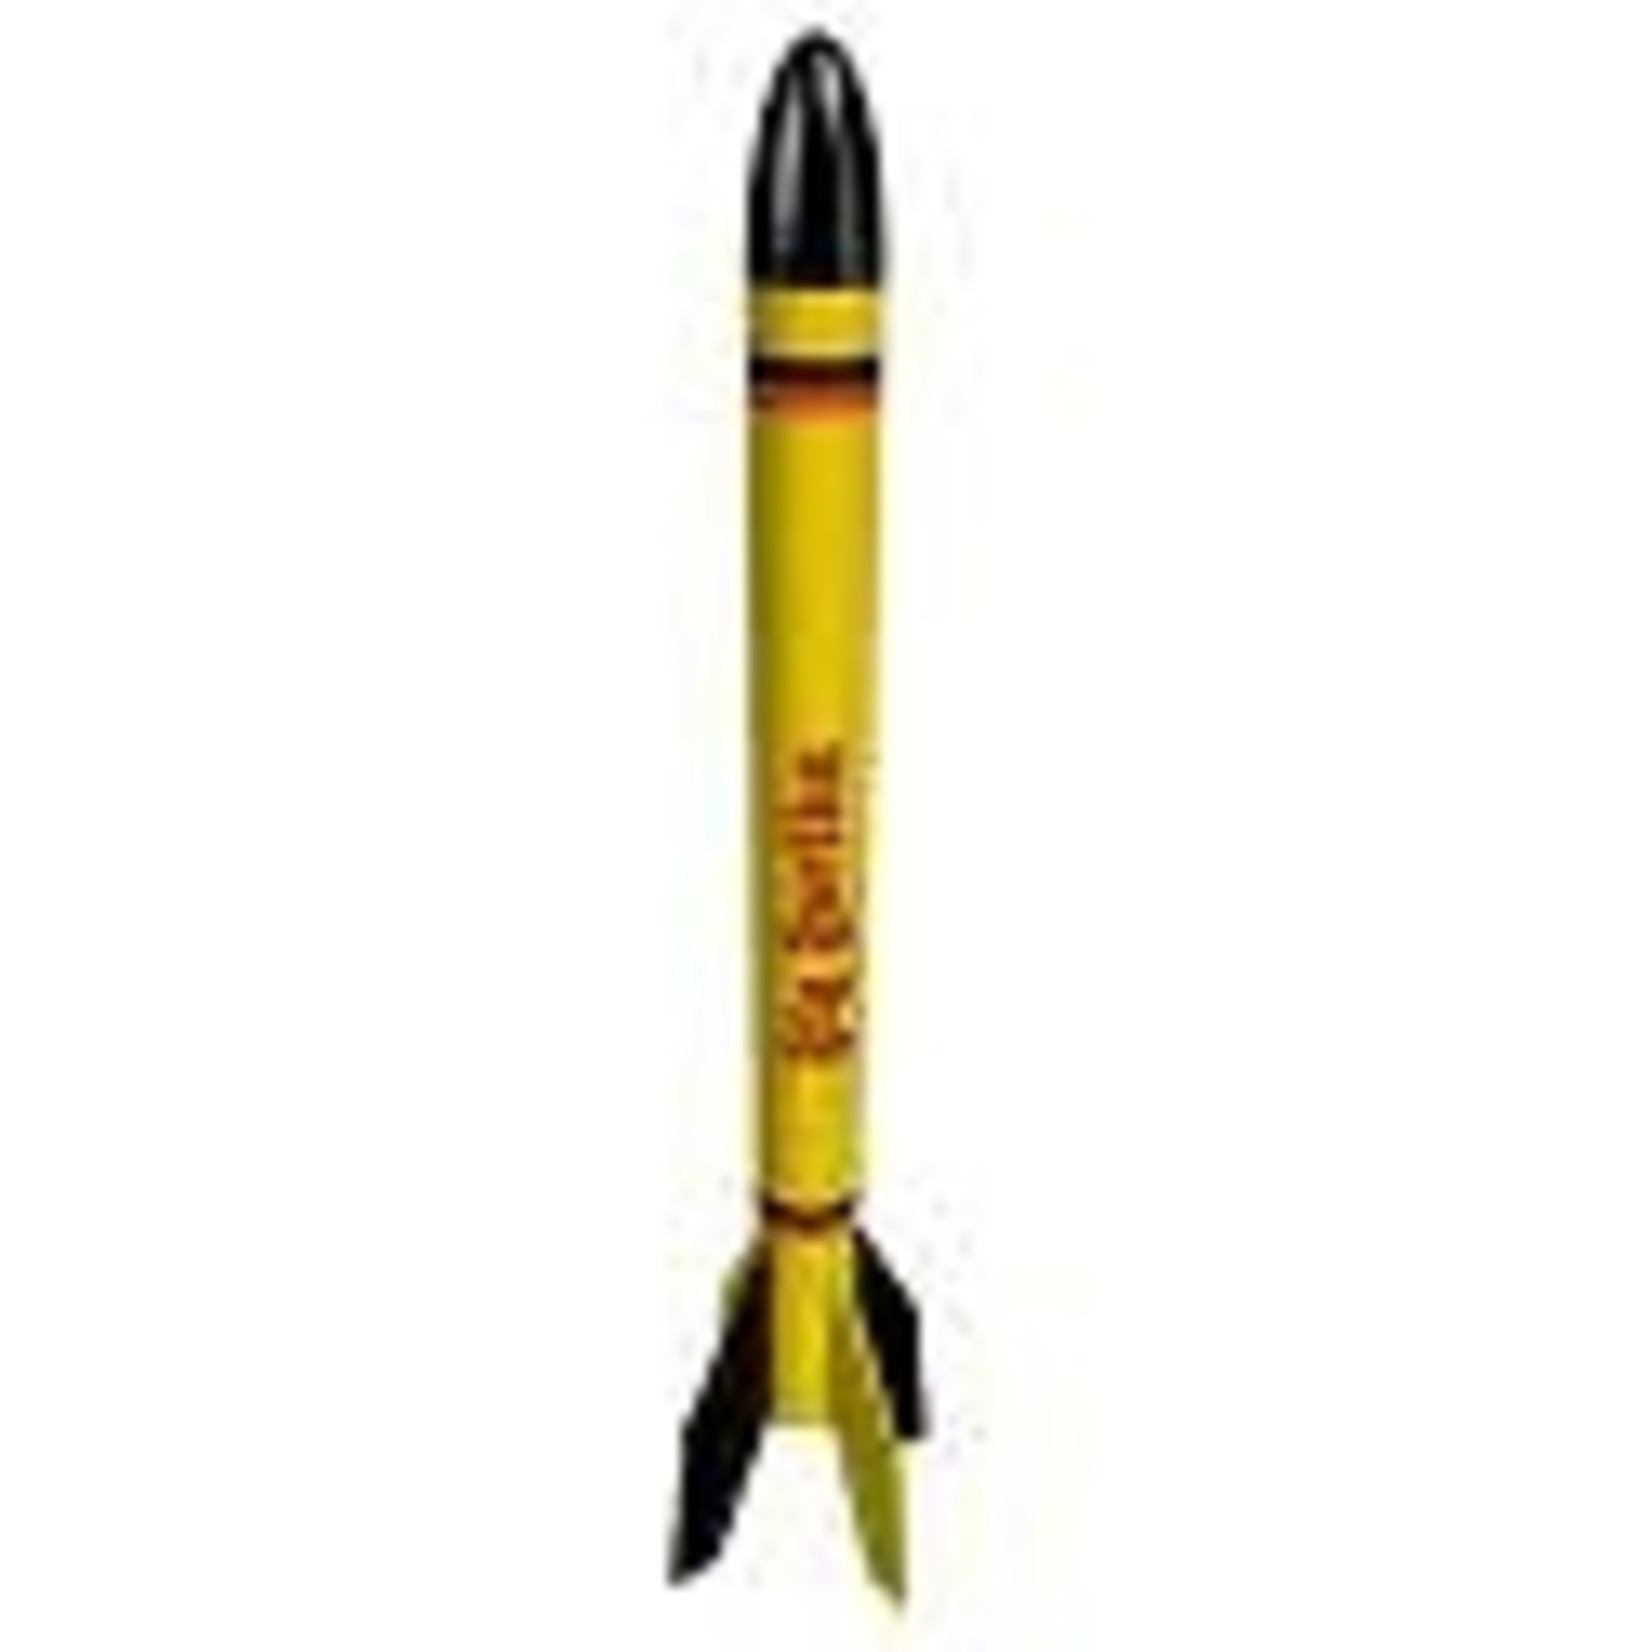 Estes Rockets EST1948  Big Bertha Model Rocket Kit, Skill Level 1